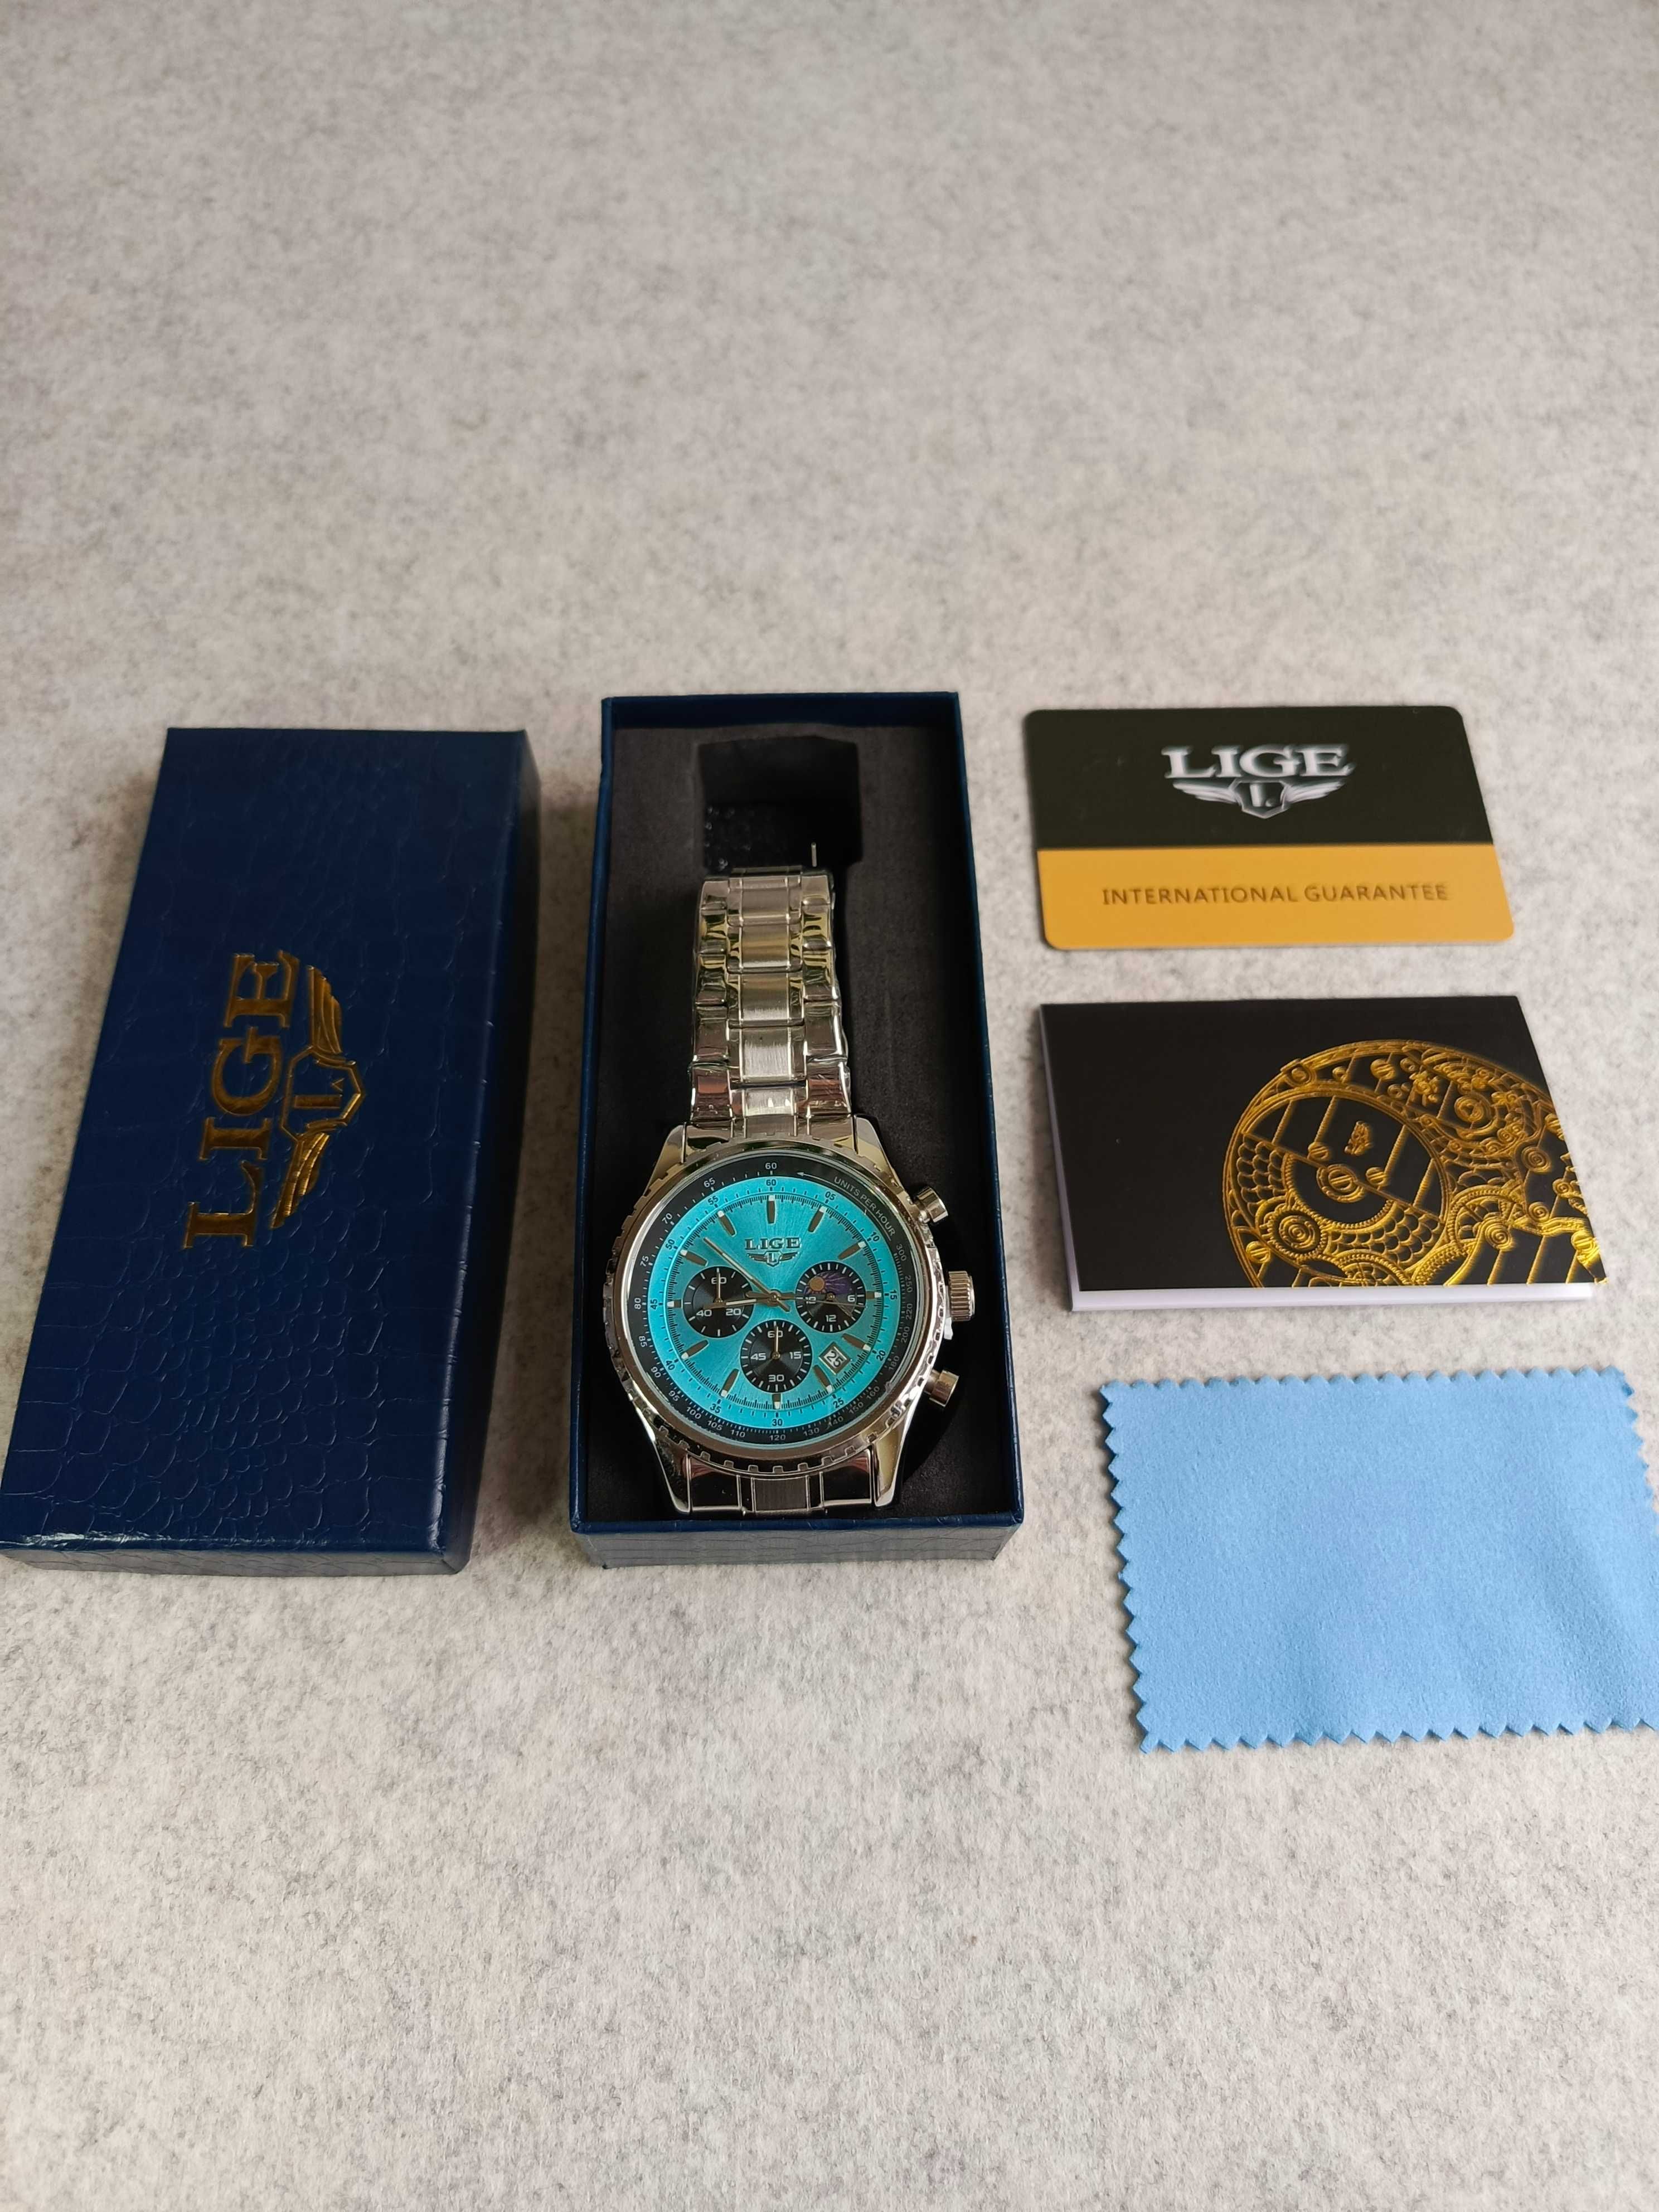 Zegarek męski bransoleta, chronograf błękitny, wysoka jakość.